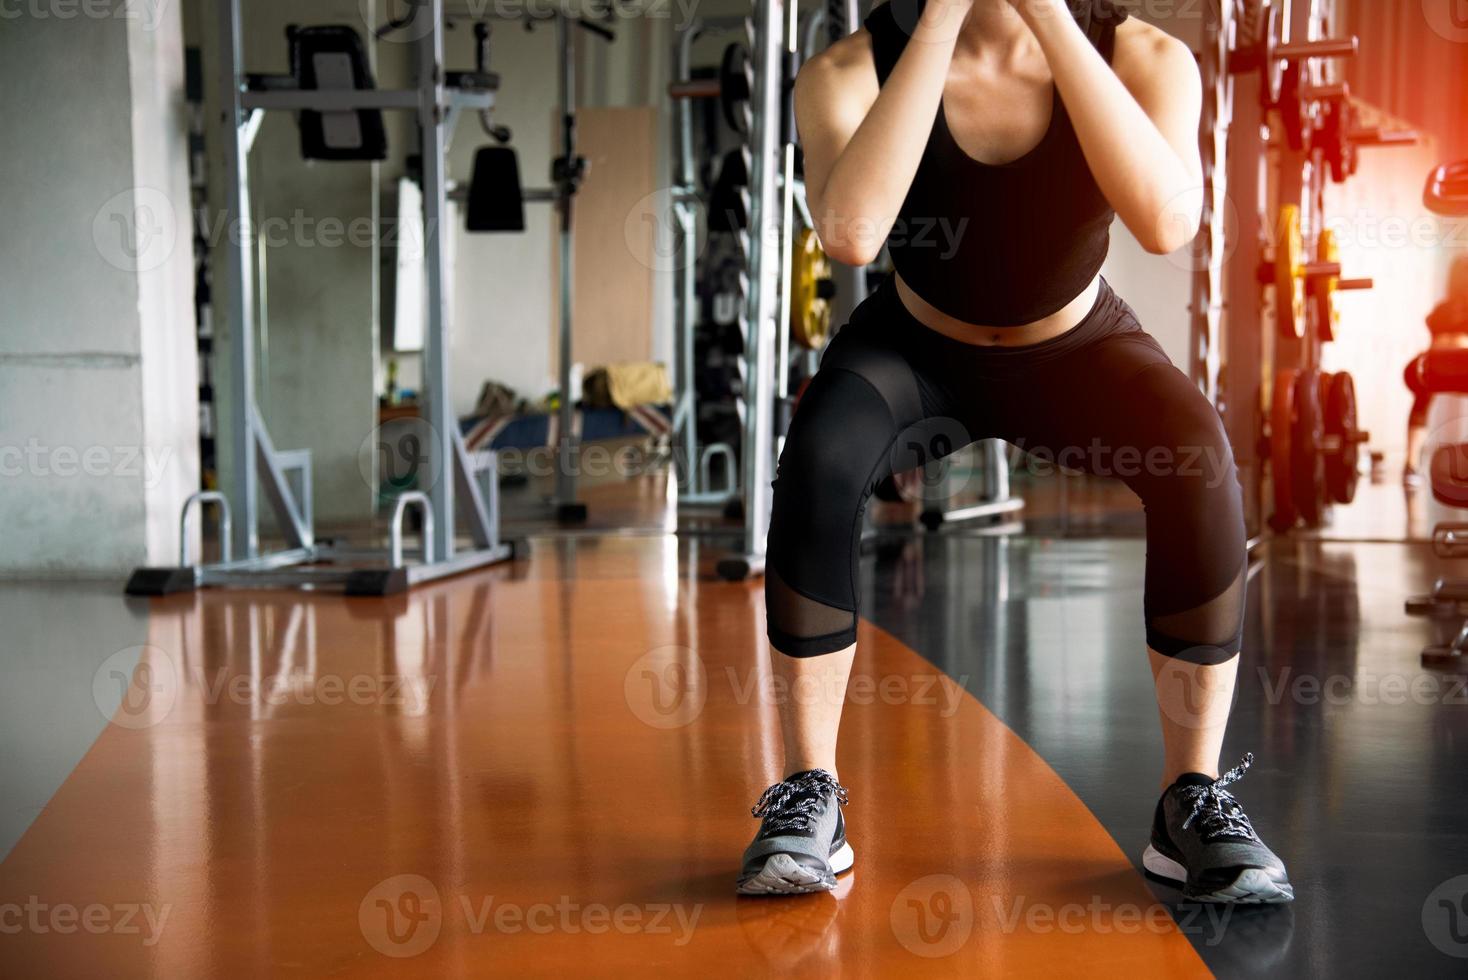 fitness vrouw doet squat workout voor vetverbranding en benen kracht in fitness sport sportschool met sportuitrusting op de achtergrond. schoonheid en lichaamsopbouw concept. sportclub en aerobic thema foto